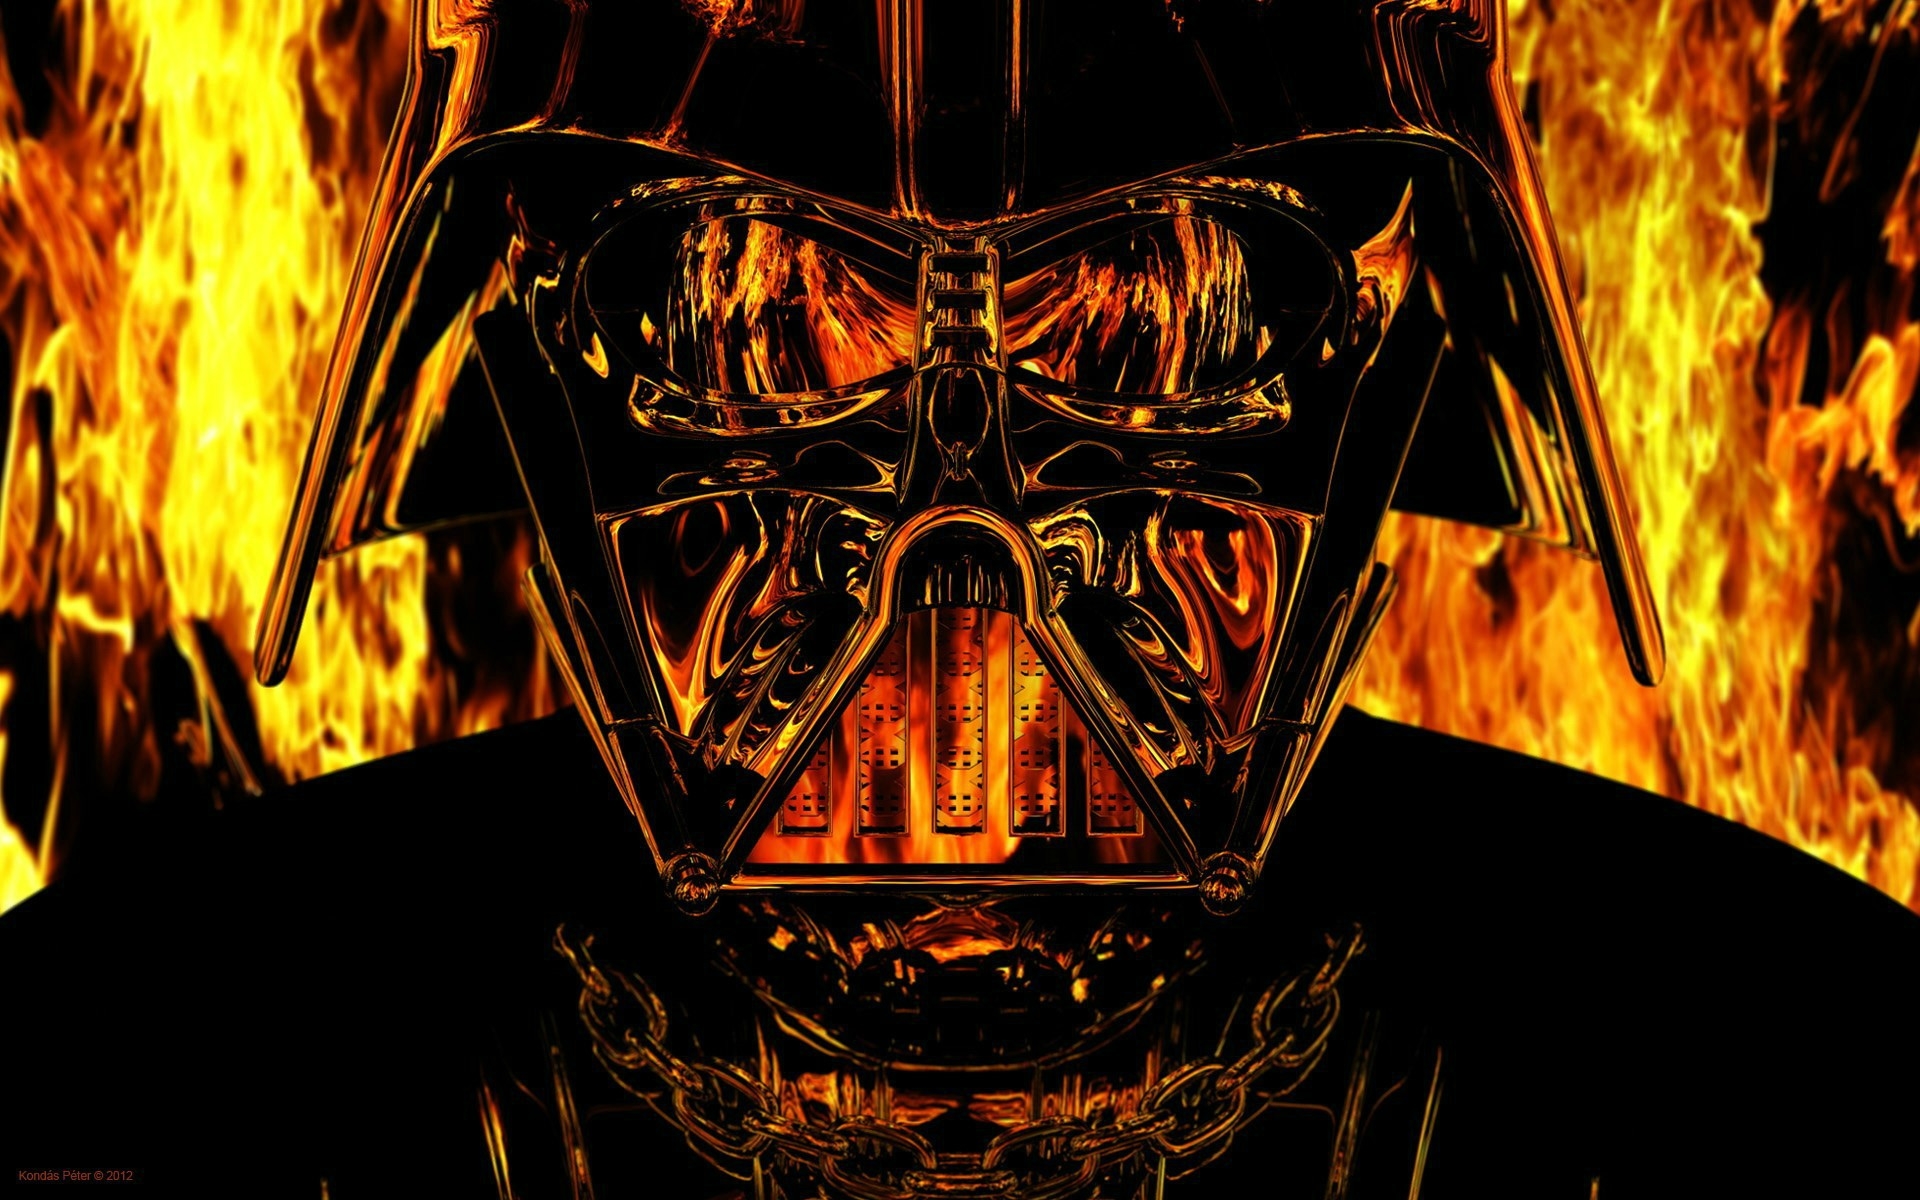 Star Wars Wallpapers - Darth Vader Flames - HD Wallpaper 